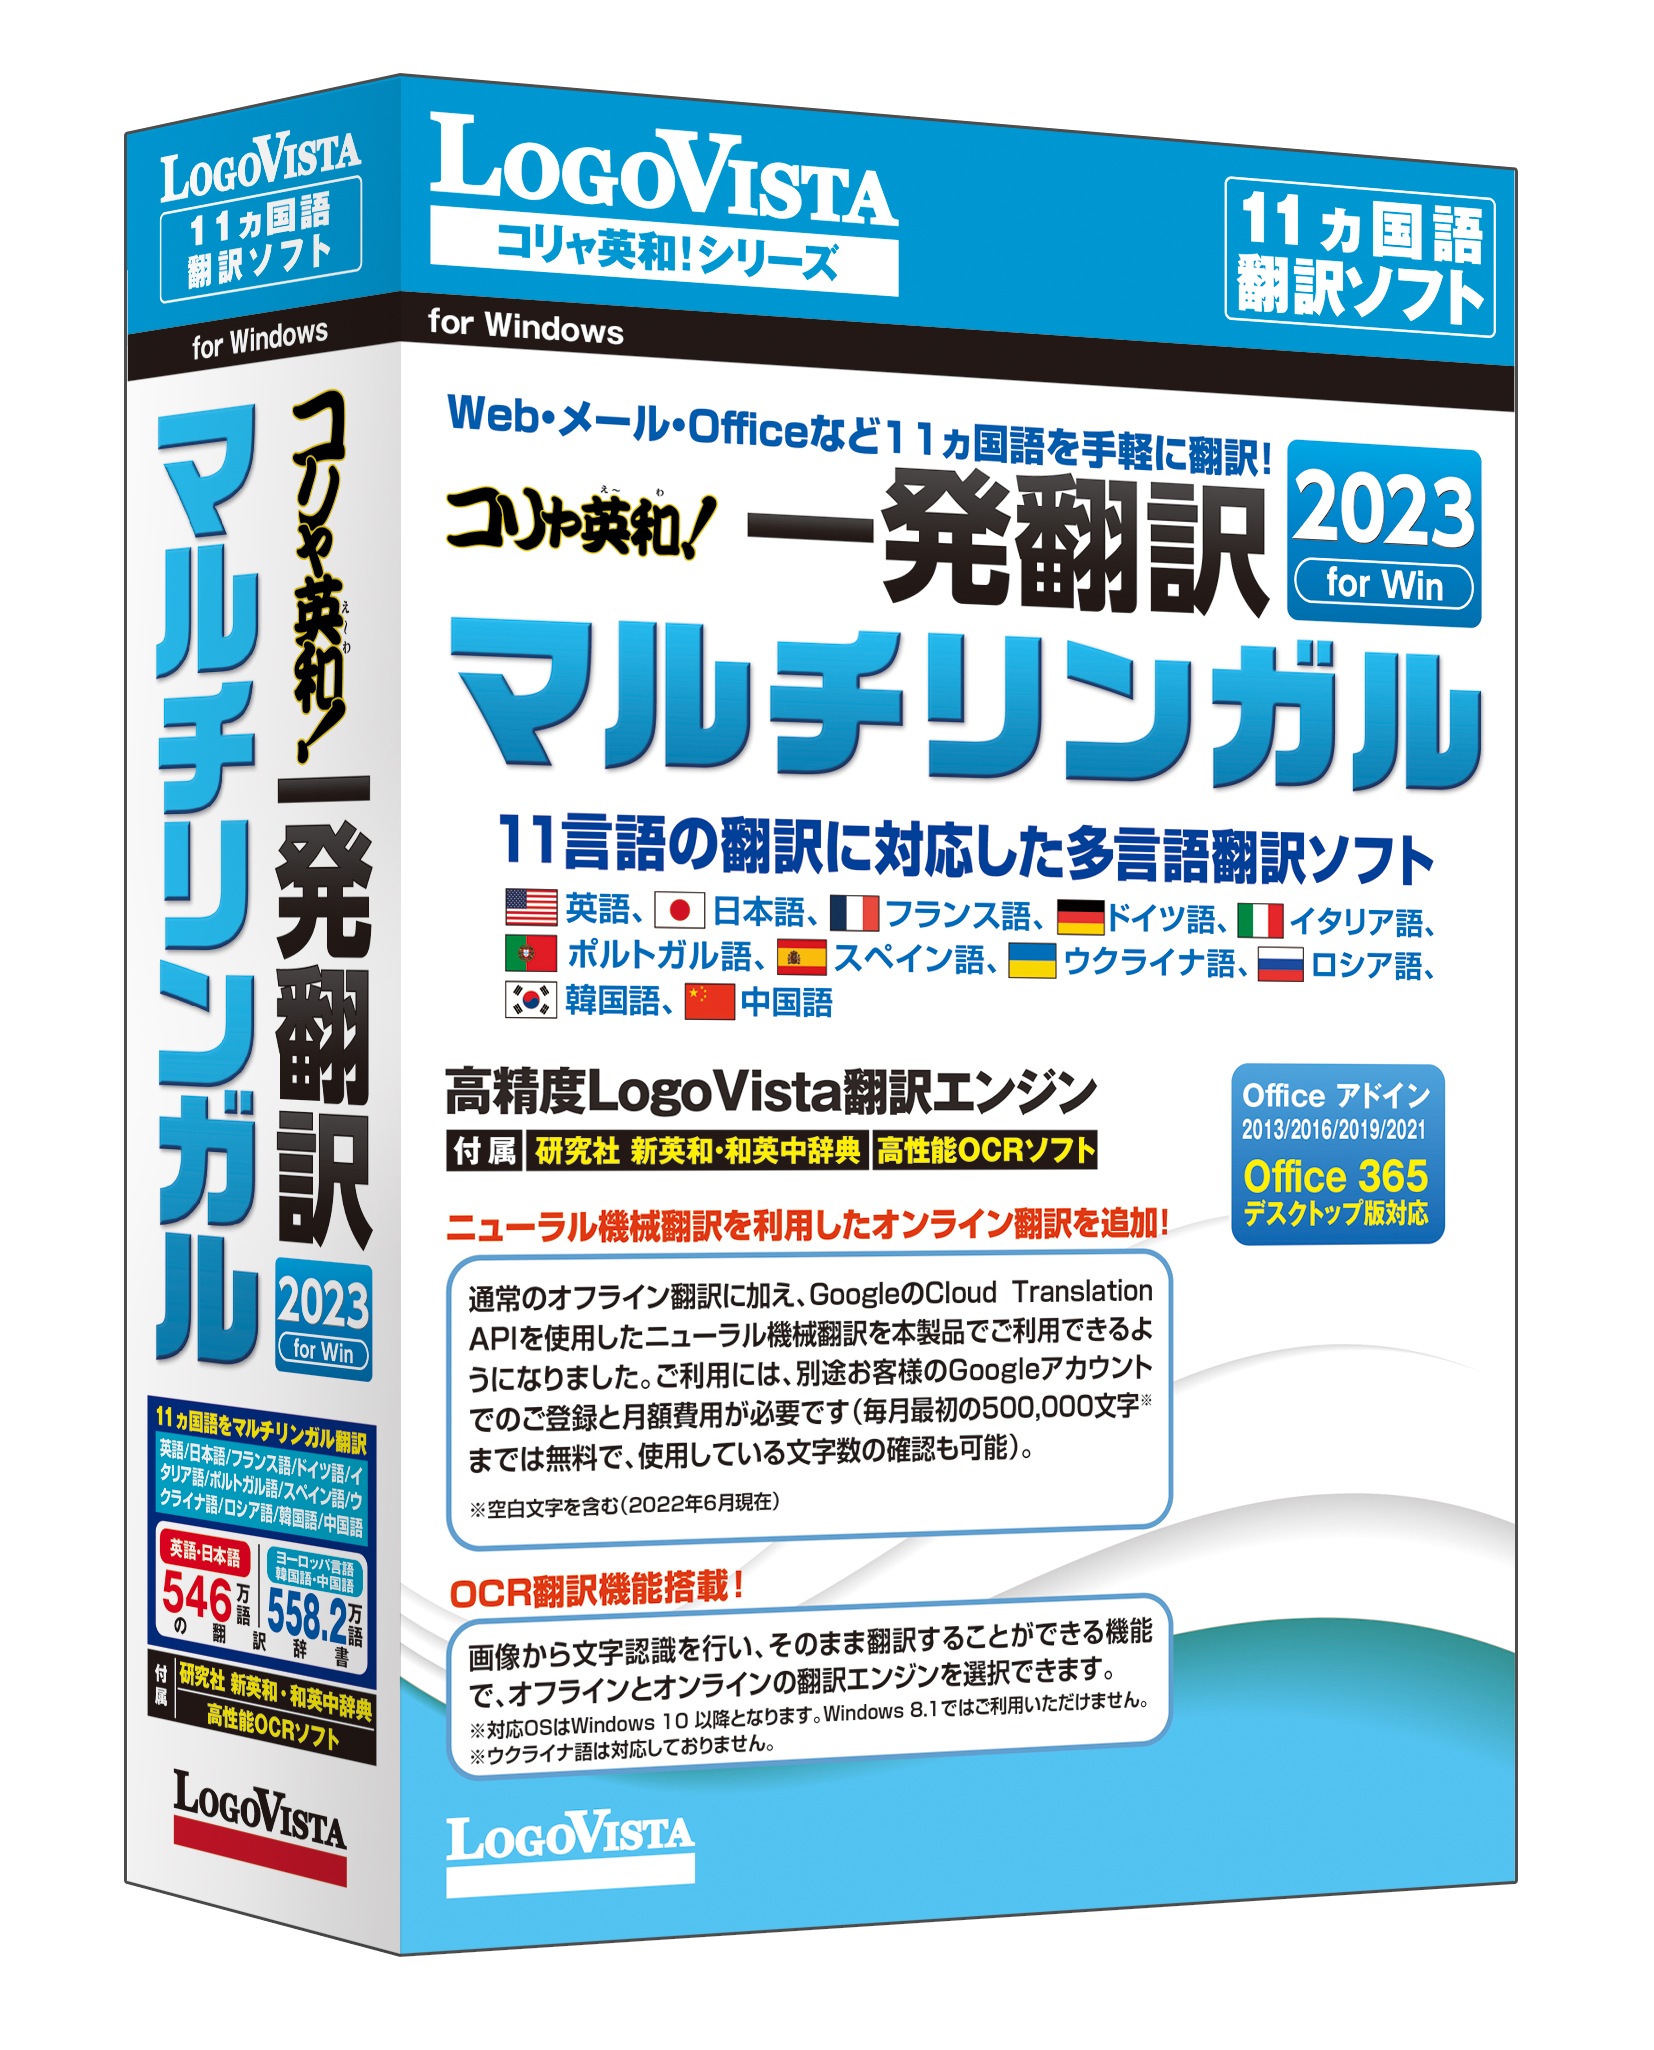 コリャ英和 一発翻訳 23 For Win マルチリンガル Dvd Rom版 を新発売